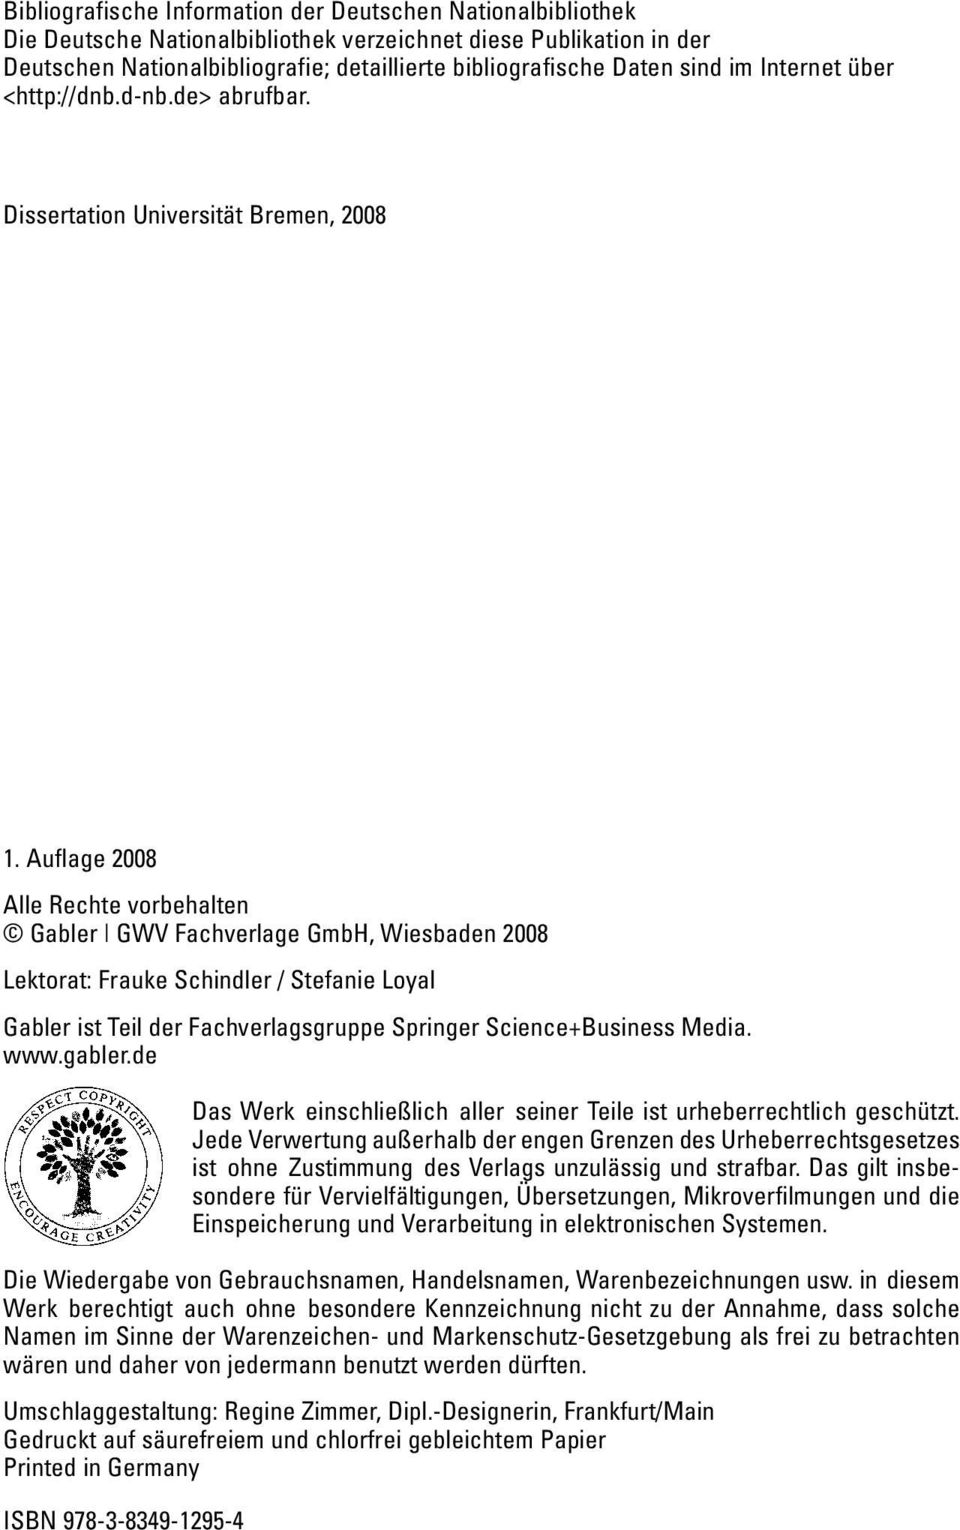 Auflage 2008 Alle Rechte vorbehalten Gabler GWV Fachverlage GmbH, Wiesbaden 2008 Lektorat: Frauke Schindler / Stefanie Loyal Gabler ist Teil der Fachverlagsgruppe Springer Science+Business Media. www.